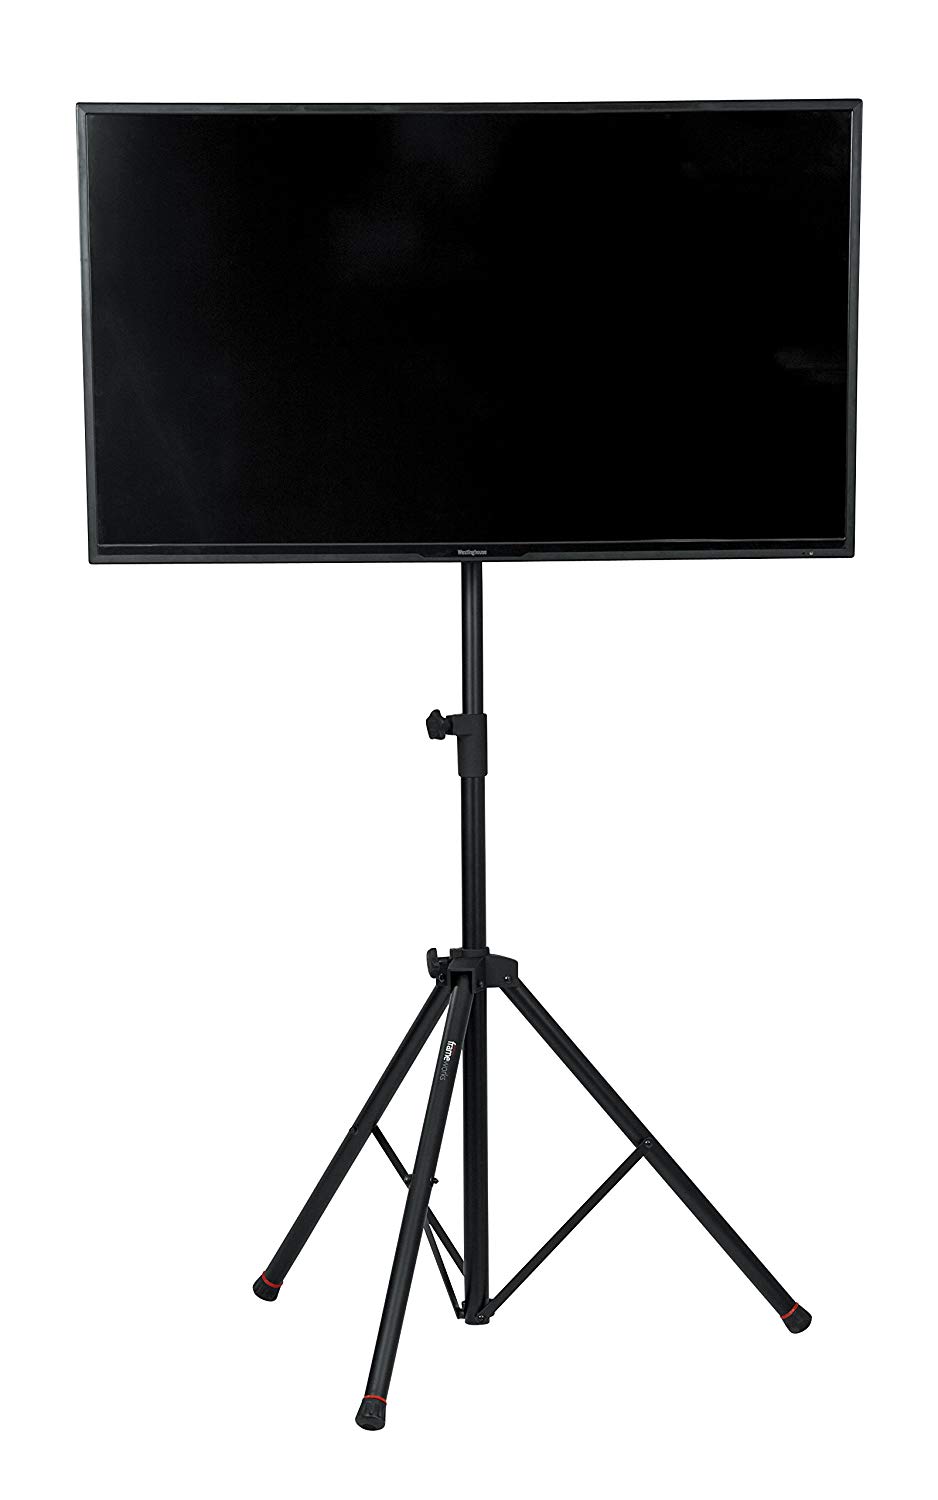 Gator Frameworks Deluxe Soporte para monitor de TV LCD / LED con trípode ajustable con Lift Piston para pantallas de hasta 48 "(GFW-AV-LCD-2)